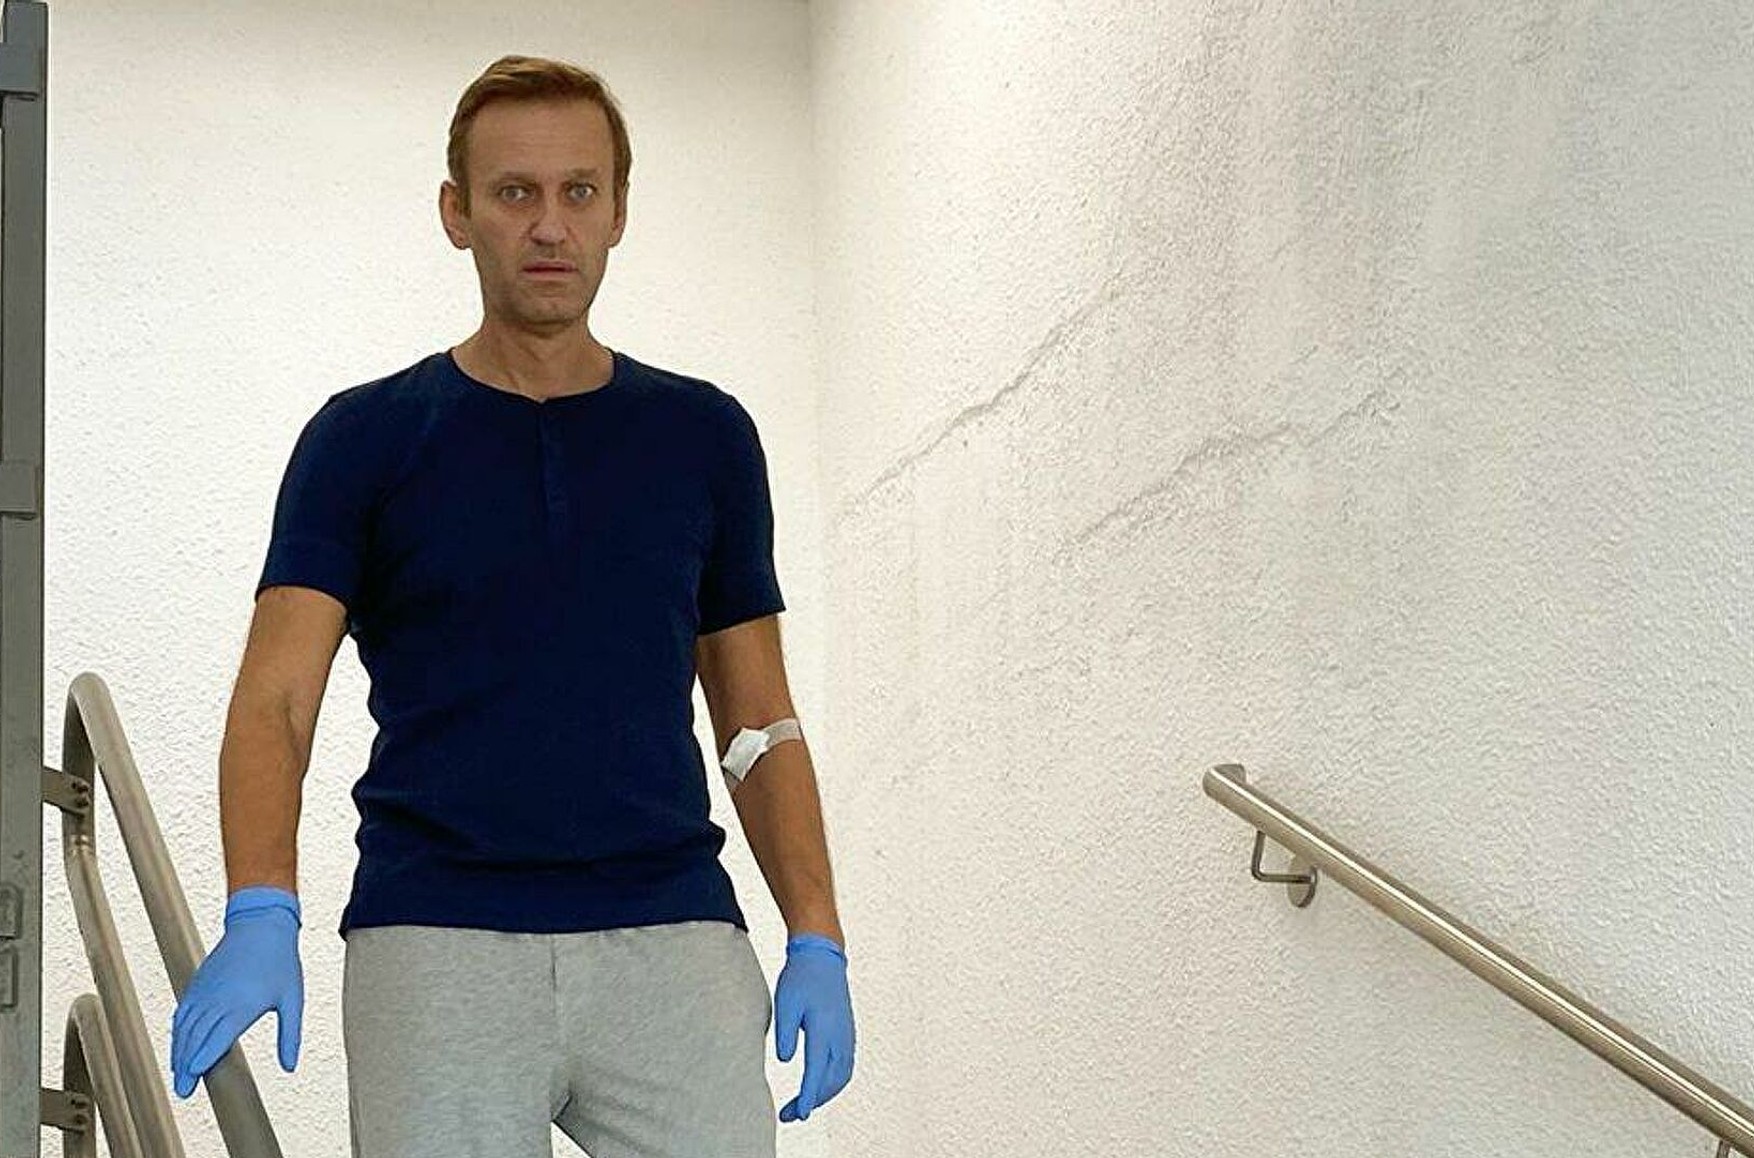 Берлінська клініка Charite опублікувала звіт про лікування Навального, підтвердивши його отруєння бойовим речовиною